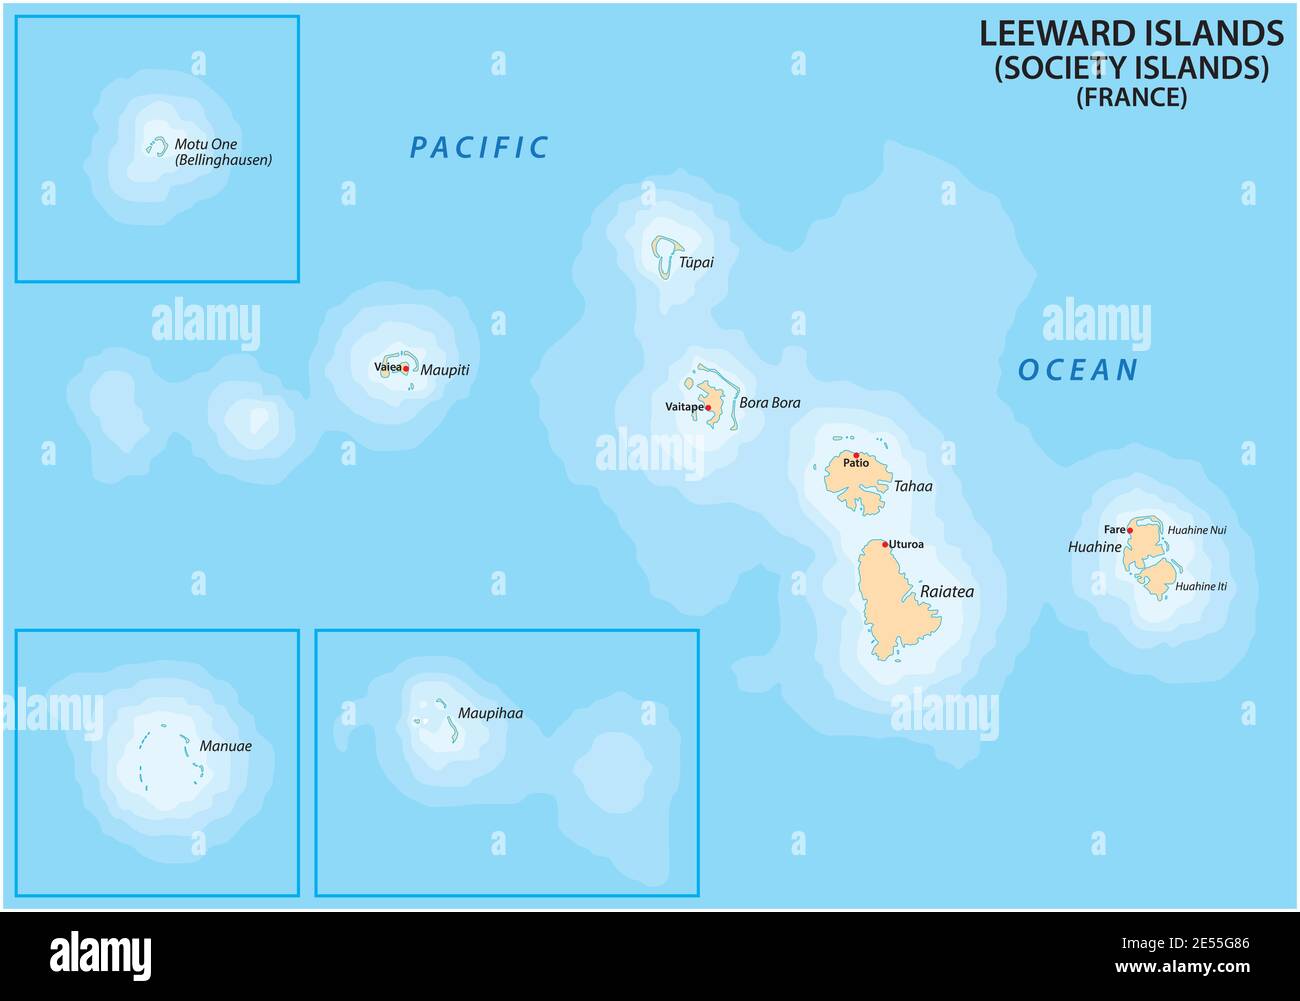 Karte der französischen polynesischen Inseln Leeward Islands (Gesellschaftsinseln), Frankreich Stock Vektor